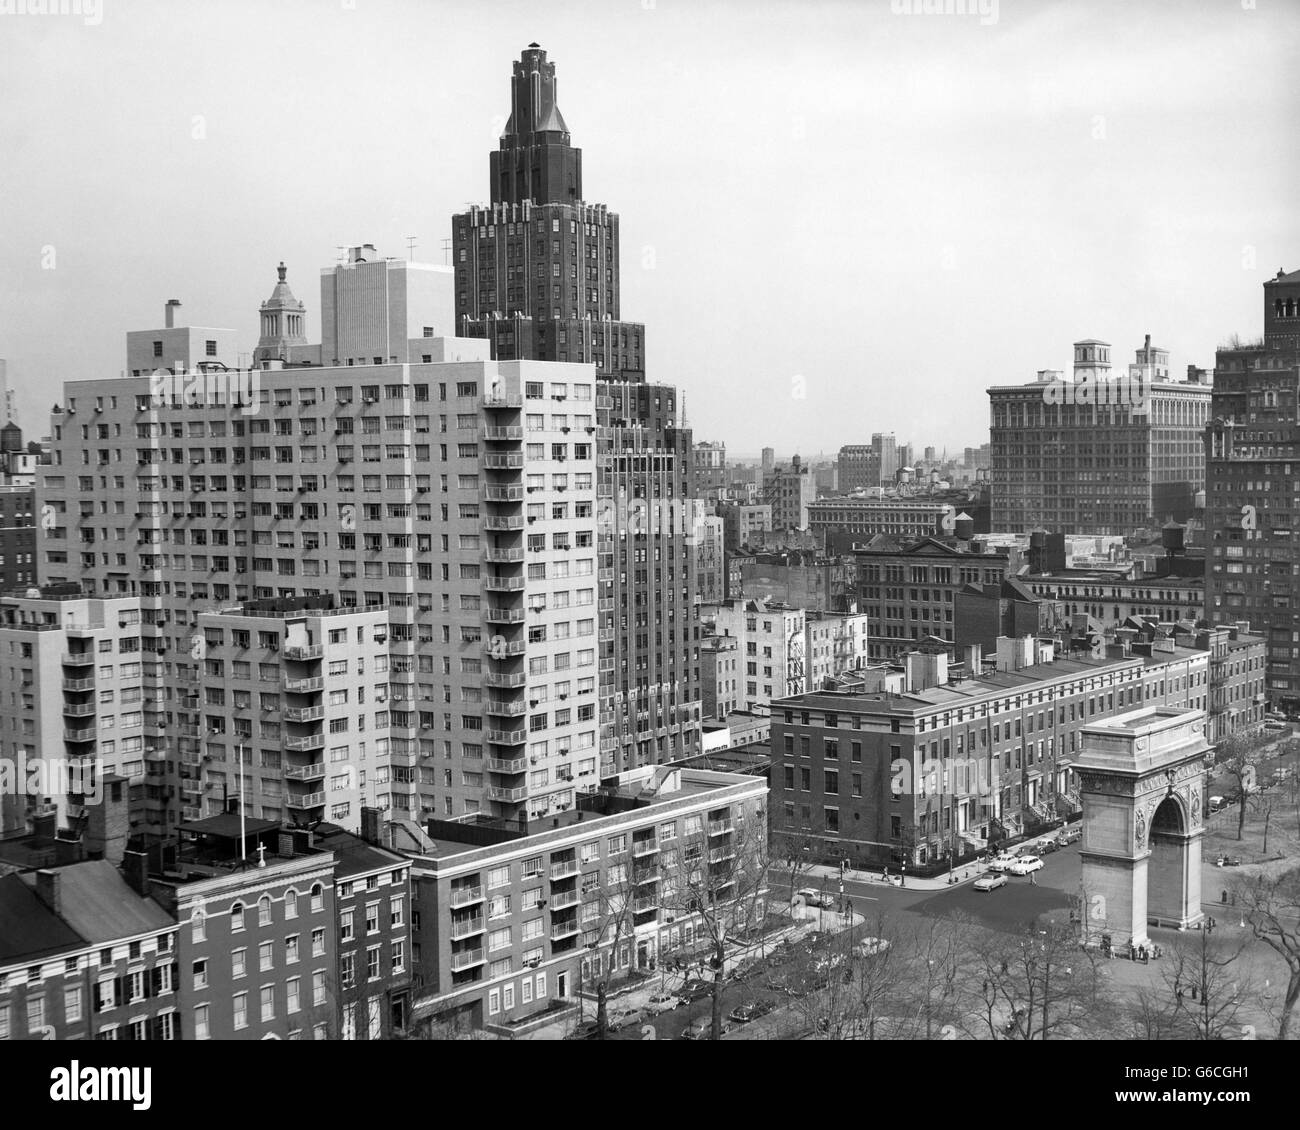 1950 VOIR L'ARCHE DE WASHINGTON SQUARE AU NORD AVEC LA CINQUIÈME AVENUE BÂTIMENTS Numéro 1 & 2 de Washington Square Park, NEW YORK CITY NEW YORK USA Banque D'Images